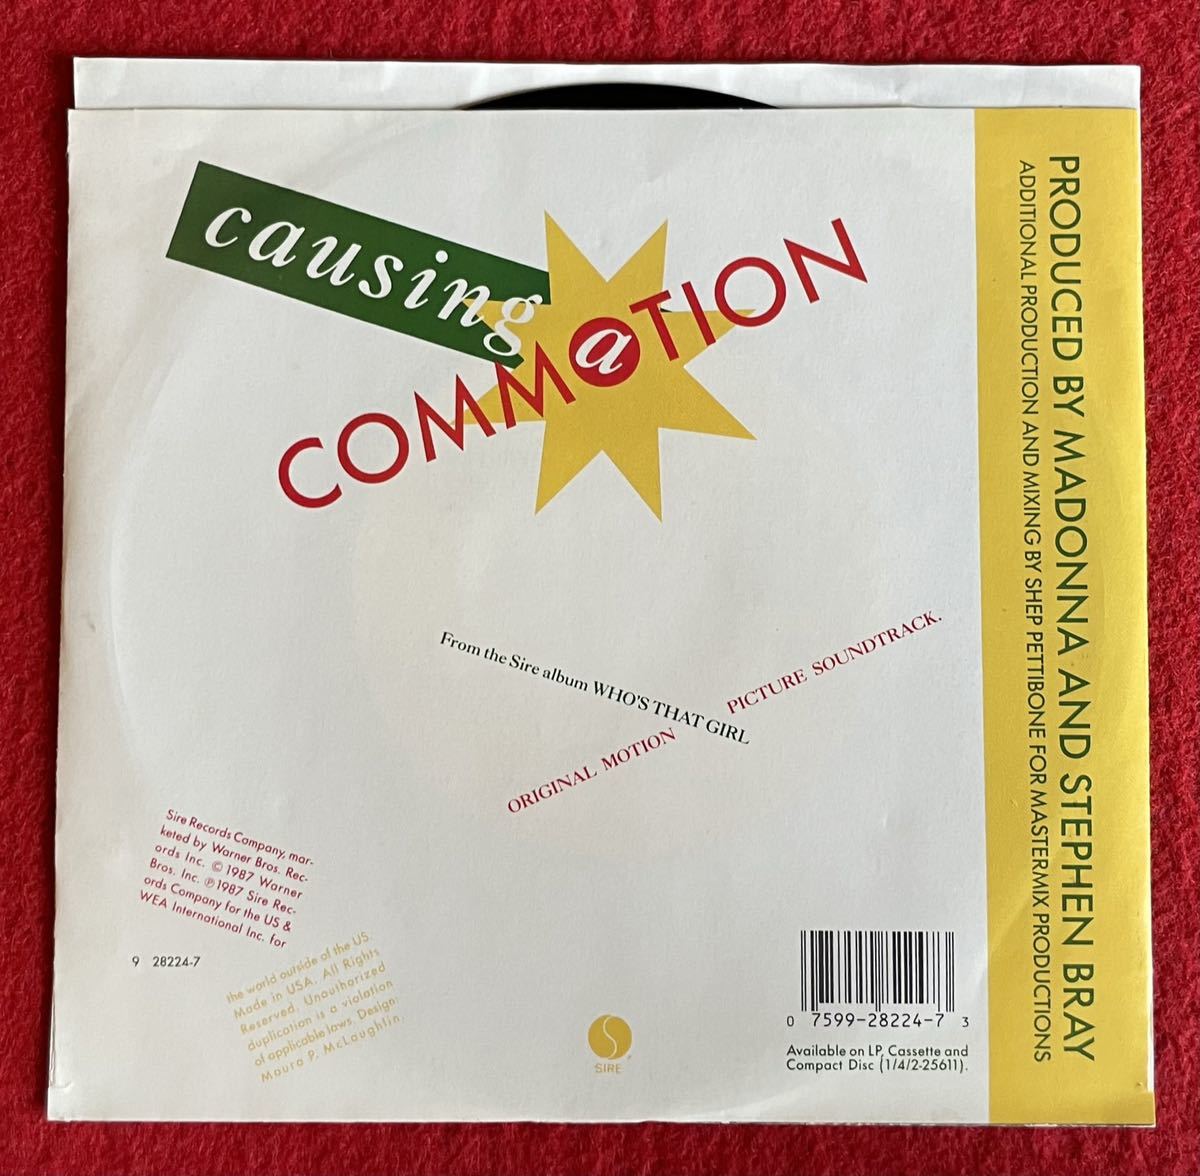 EP盤 Madonna / Causing a Commotion US盤 オリジナル7インチ盤その他プロモーション盤 レア盤 人気レコード 多数出品。_画像5